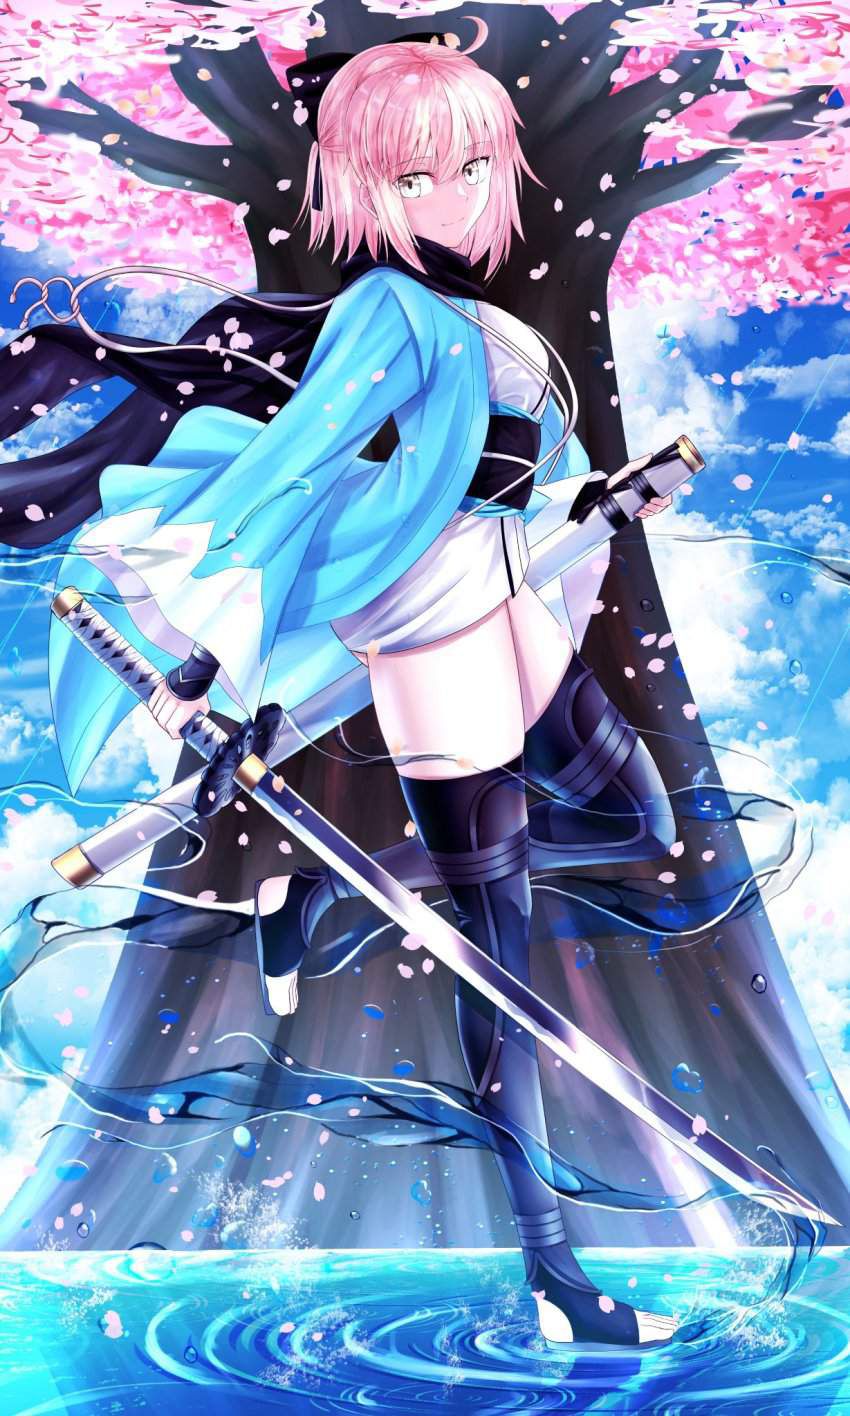 【Fate/Grand Order】Erotic image of Soji Okita ... 7